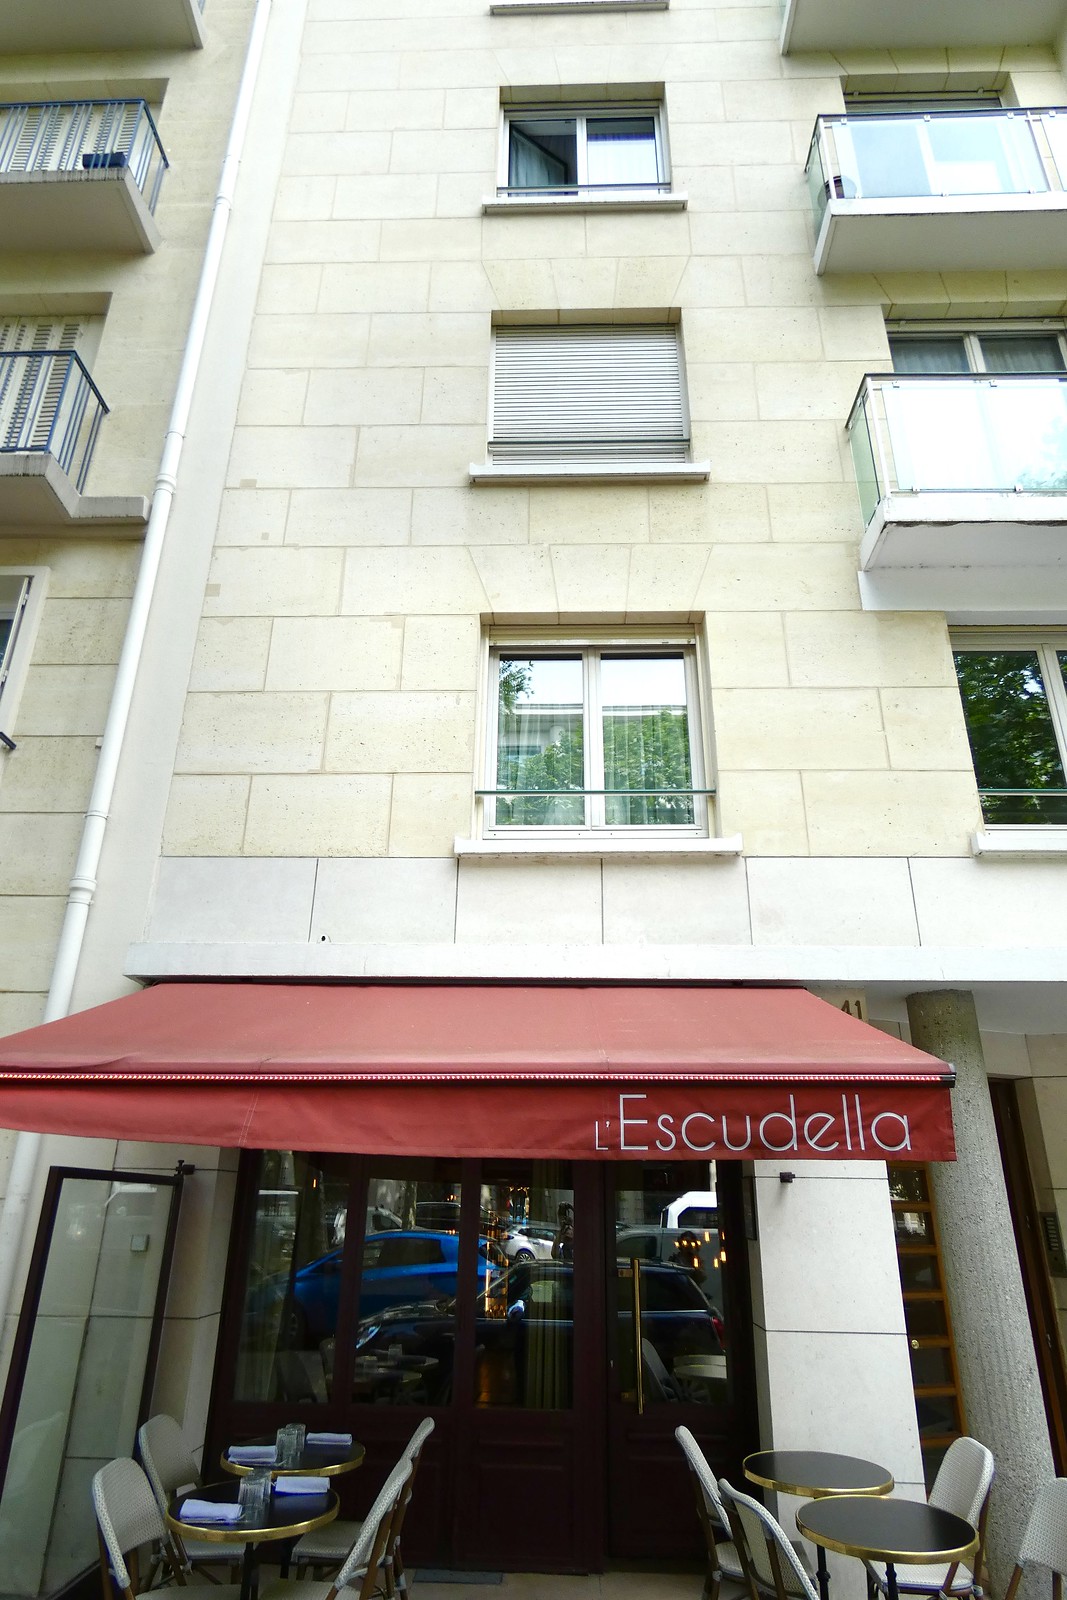 Restaurant l'Escudella, Paris